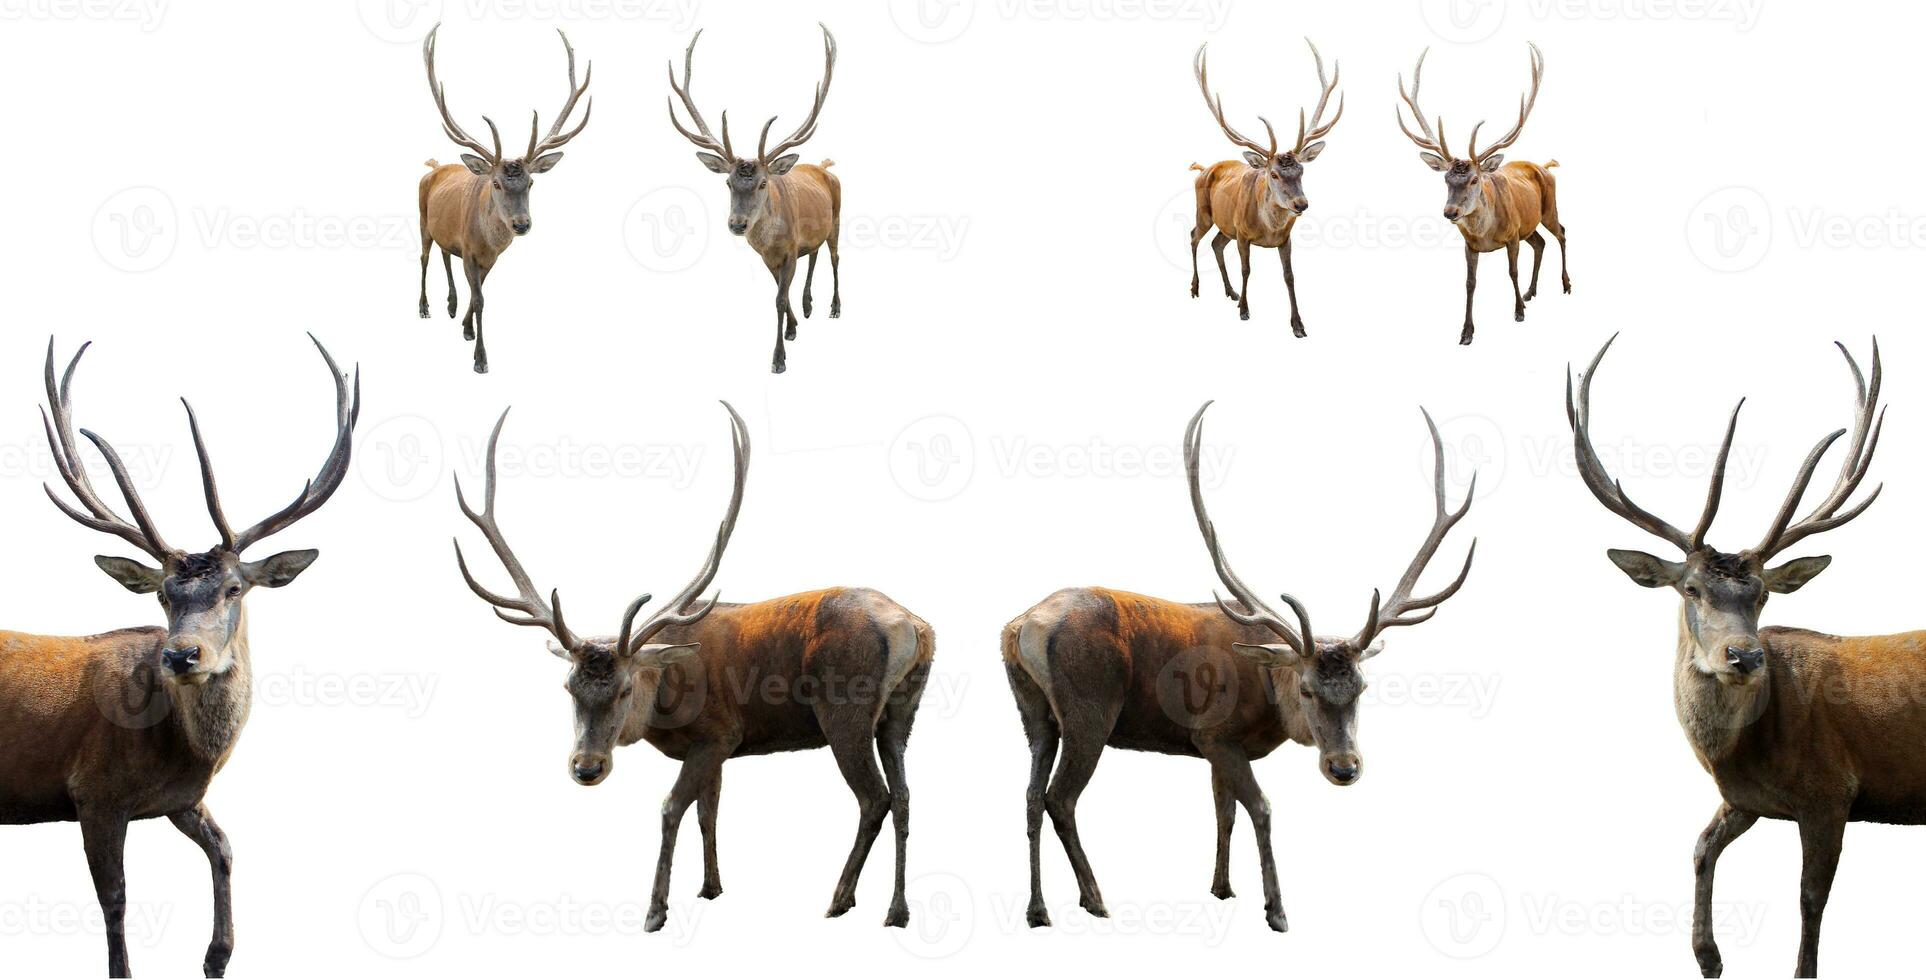 en uppsättning av rådjur med stor horn och horn på wight bakgrund foto